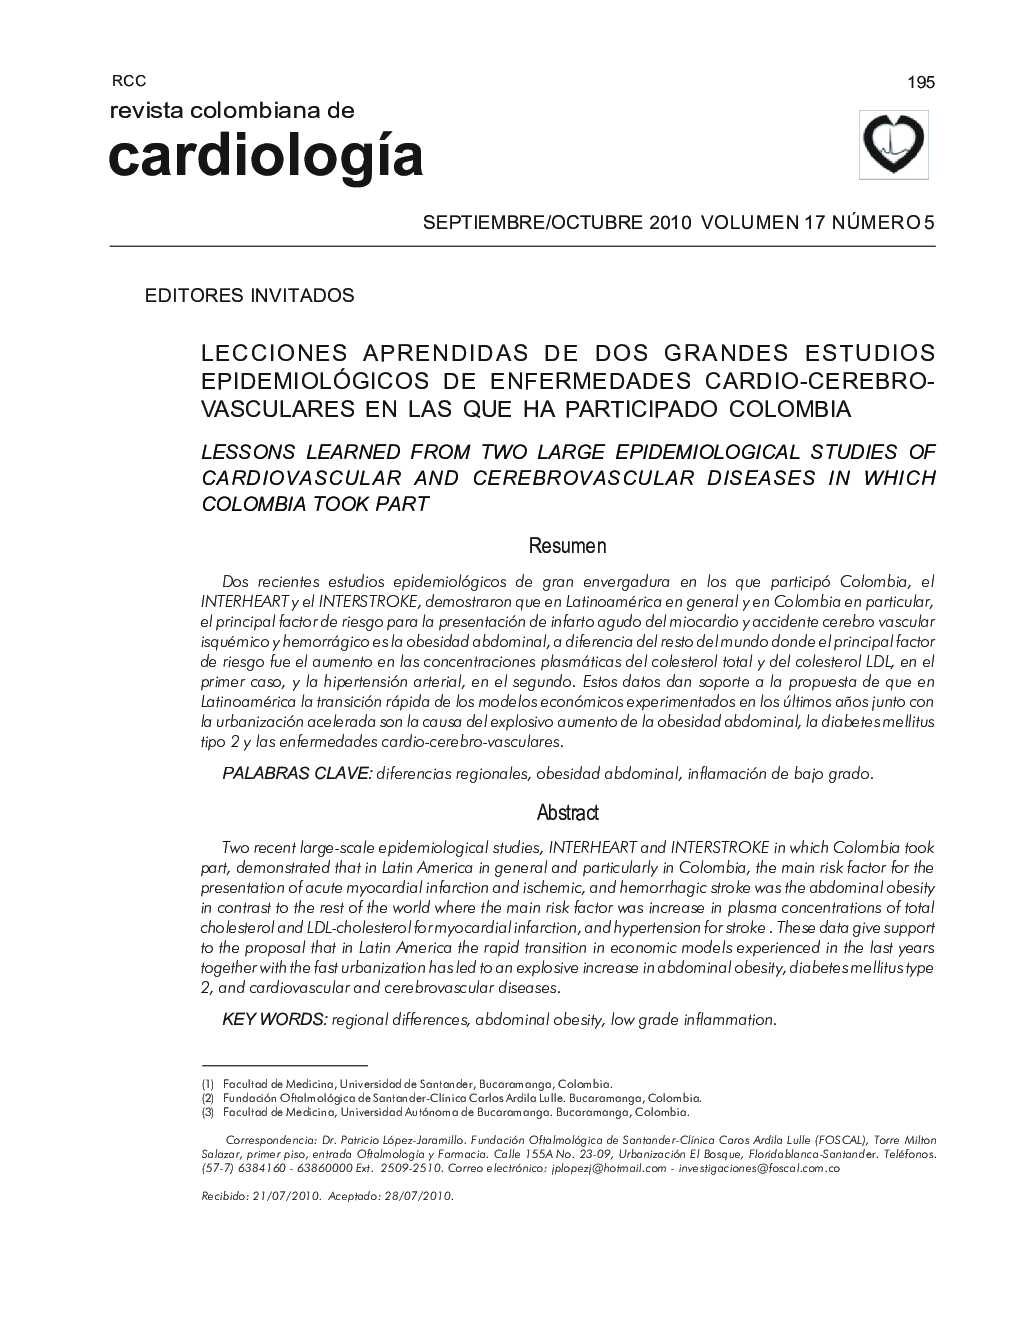 Lecciones aprendidas de dos grandes estudios epidemiológicos de enfermedades cardio-cerebrovasculares en las que ha participado colombia